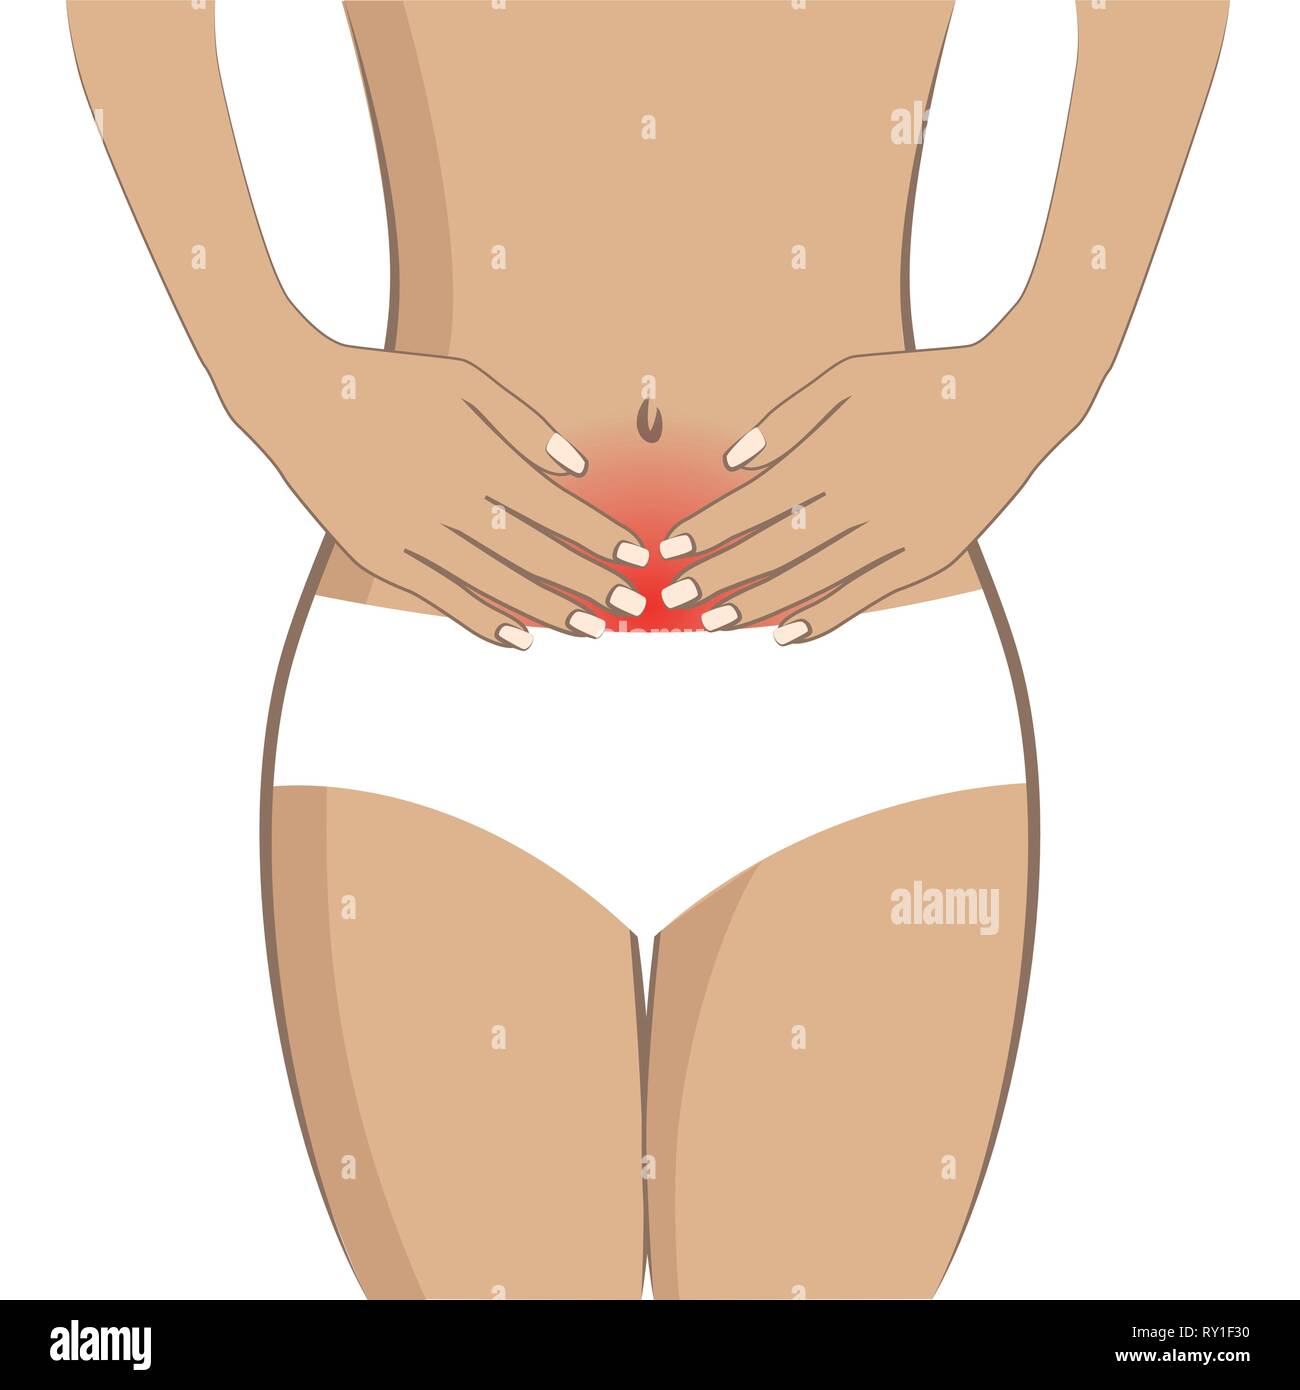 Junge Frau mit Bauchschmerzen auf weißem Hintergrund Vektor-illustration EPS 10 isoliert Stock Vektor